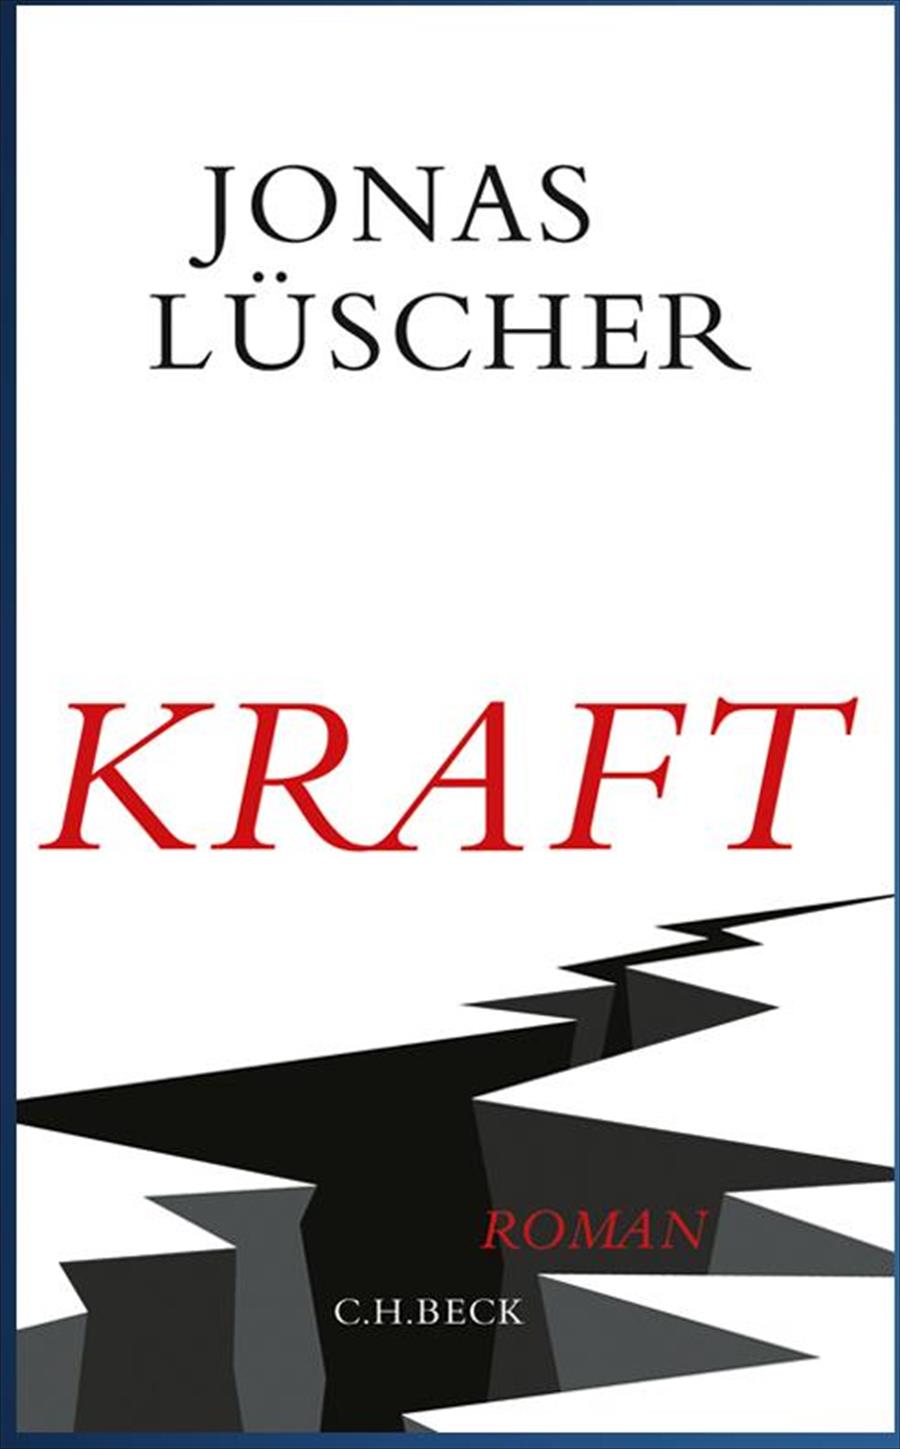 «يوناس لوشر» يفوز بجائزة الكتاب السويسري